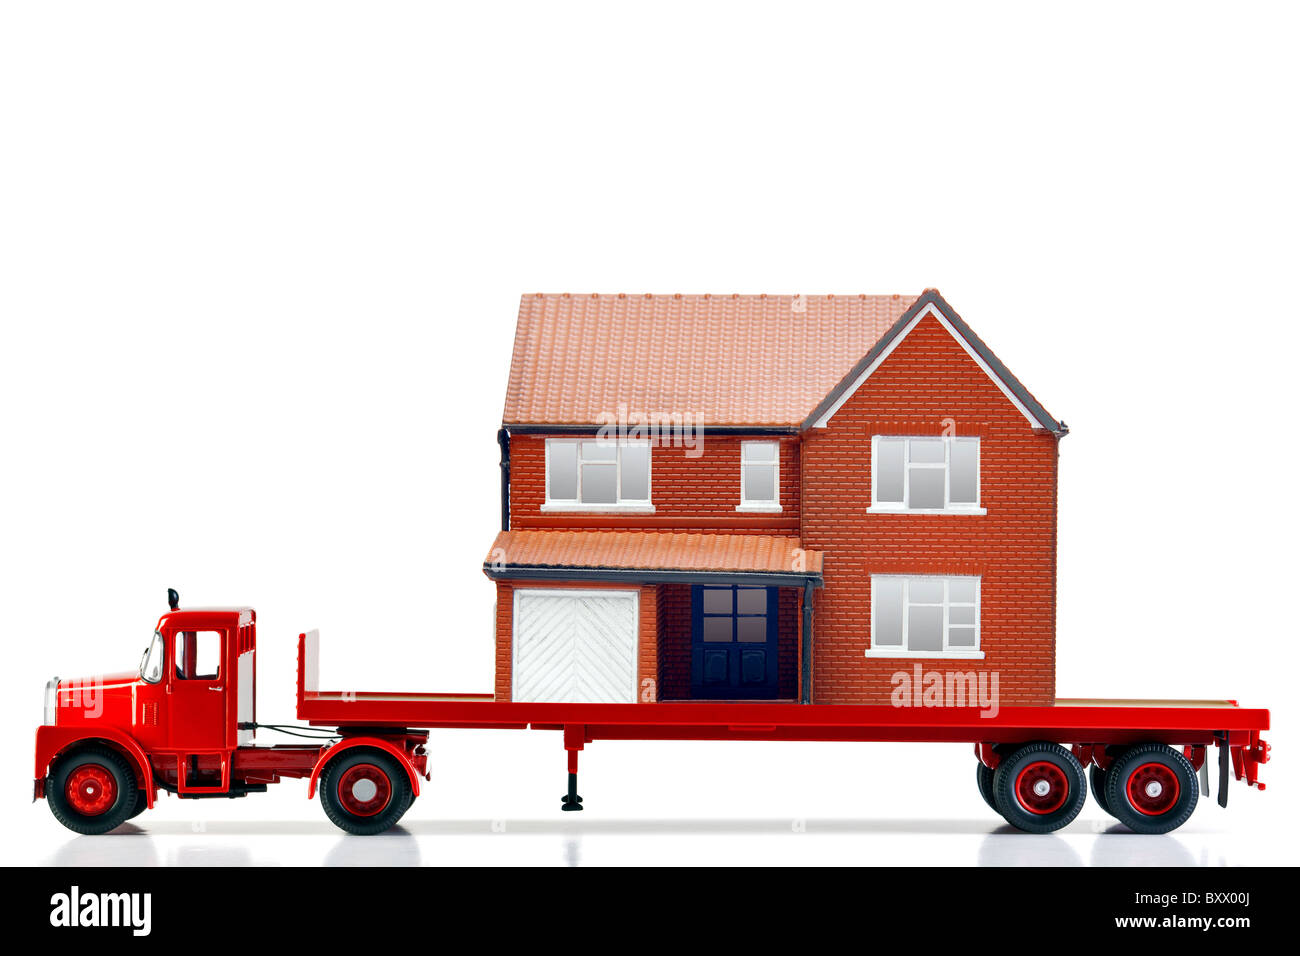 Un camión articulado cargado de superficie plana con una casa aislada en un fondo blanco. Ambos son modelos. Foto de stock